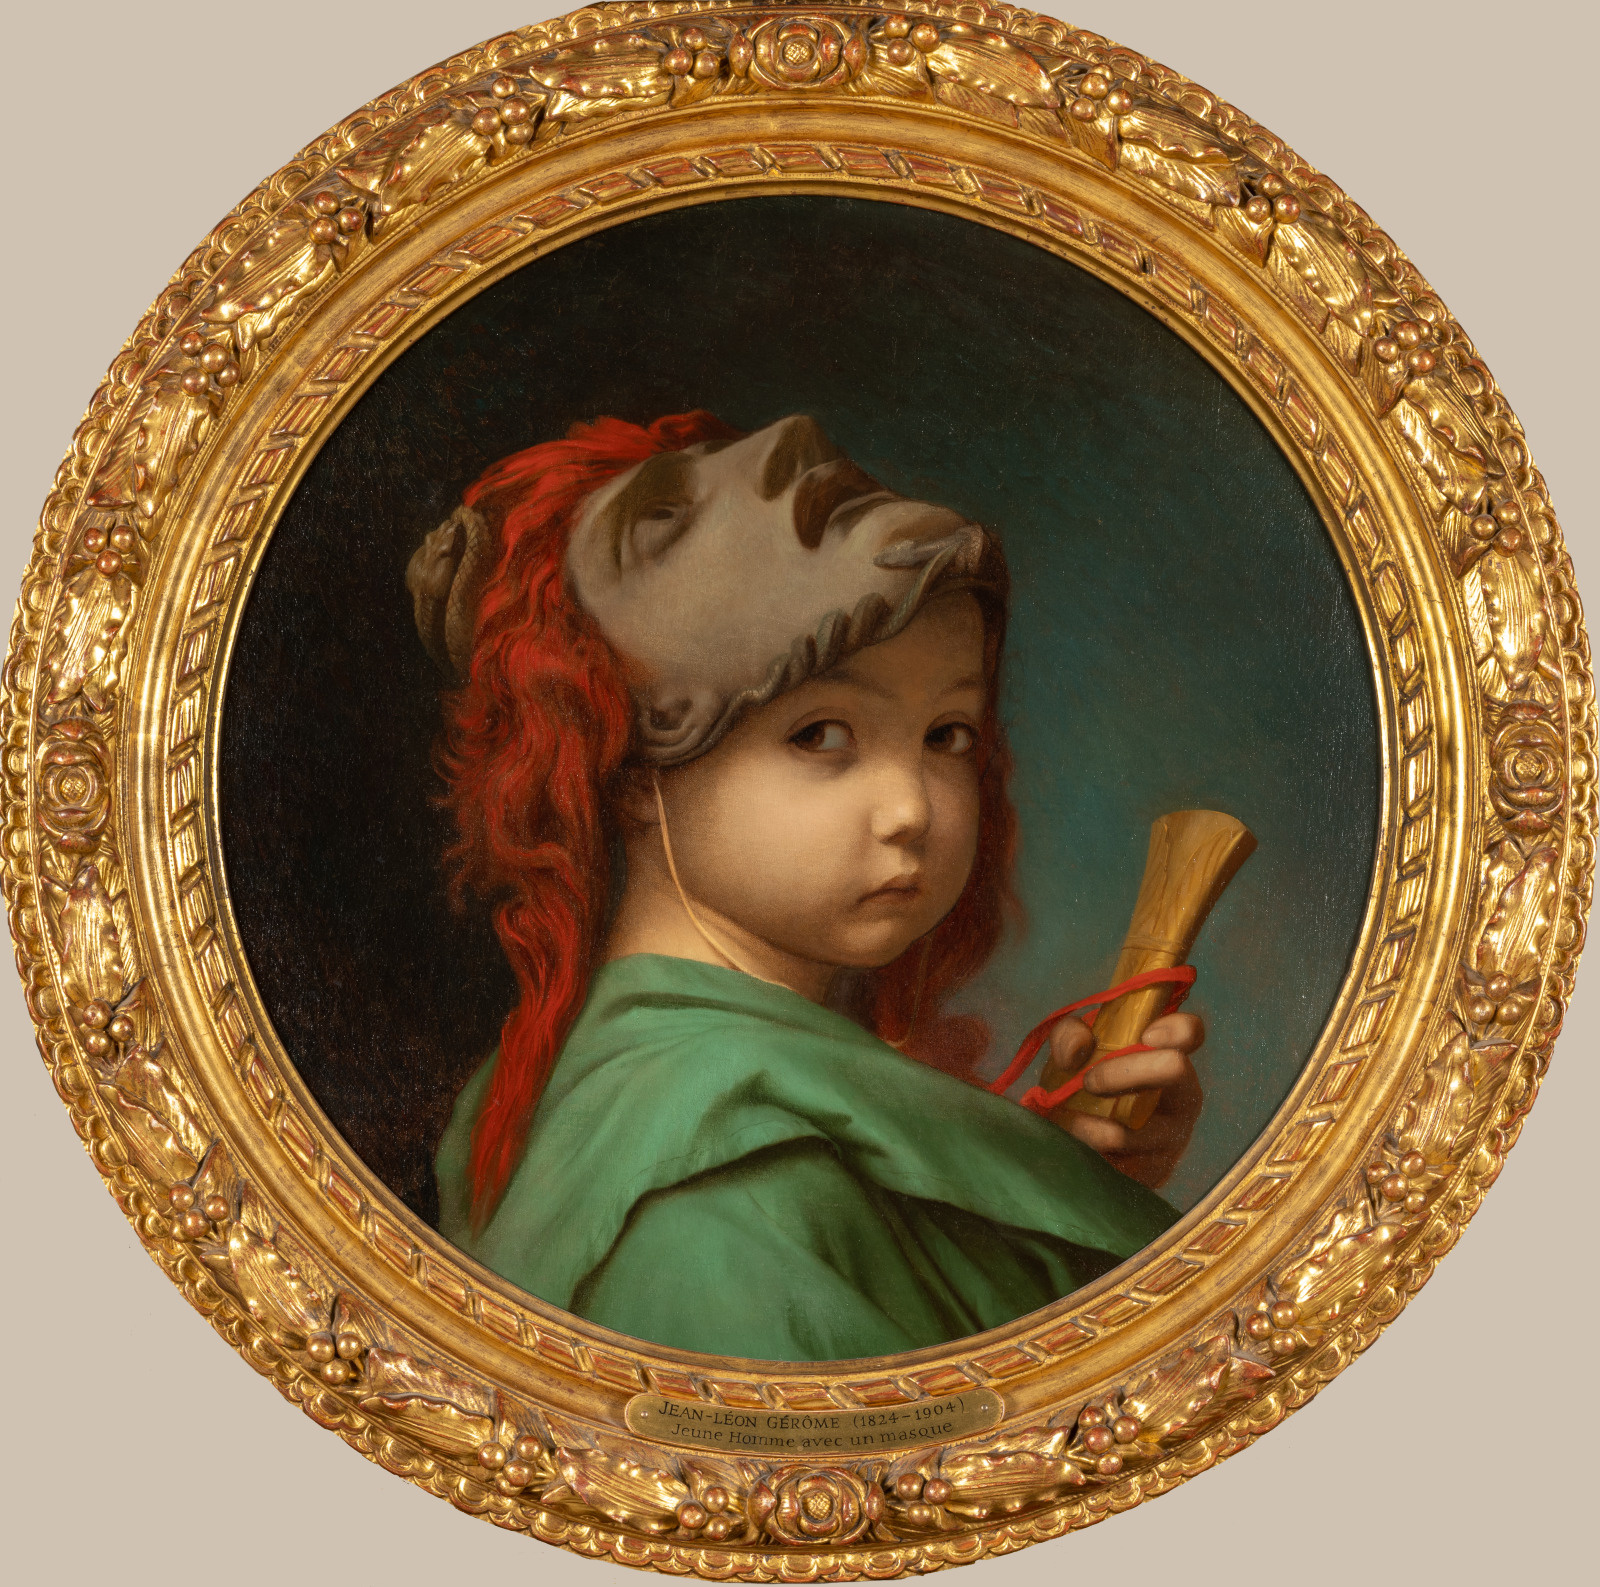 Jean-Léon Gérôme (1824-1904), Enfant au masque, entre 1840 et 1856. Huile sur toile, D. 50 cm. Paris, musée d’Orsay. Photo service de presse. © Musée d’Orsay, dist. RMN-GP / Sophie Crépy